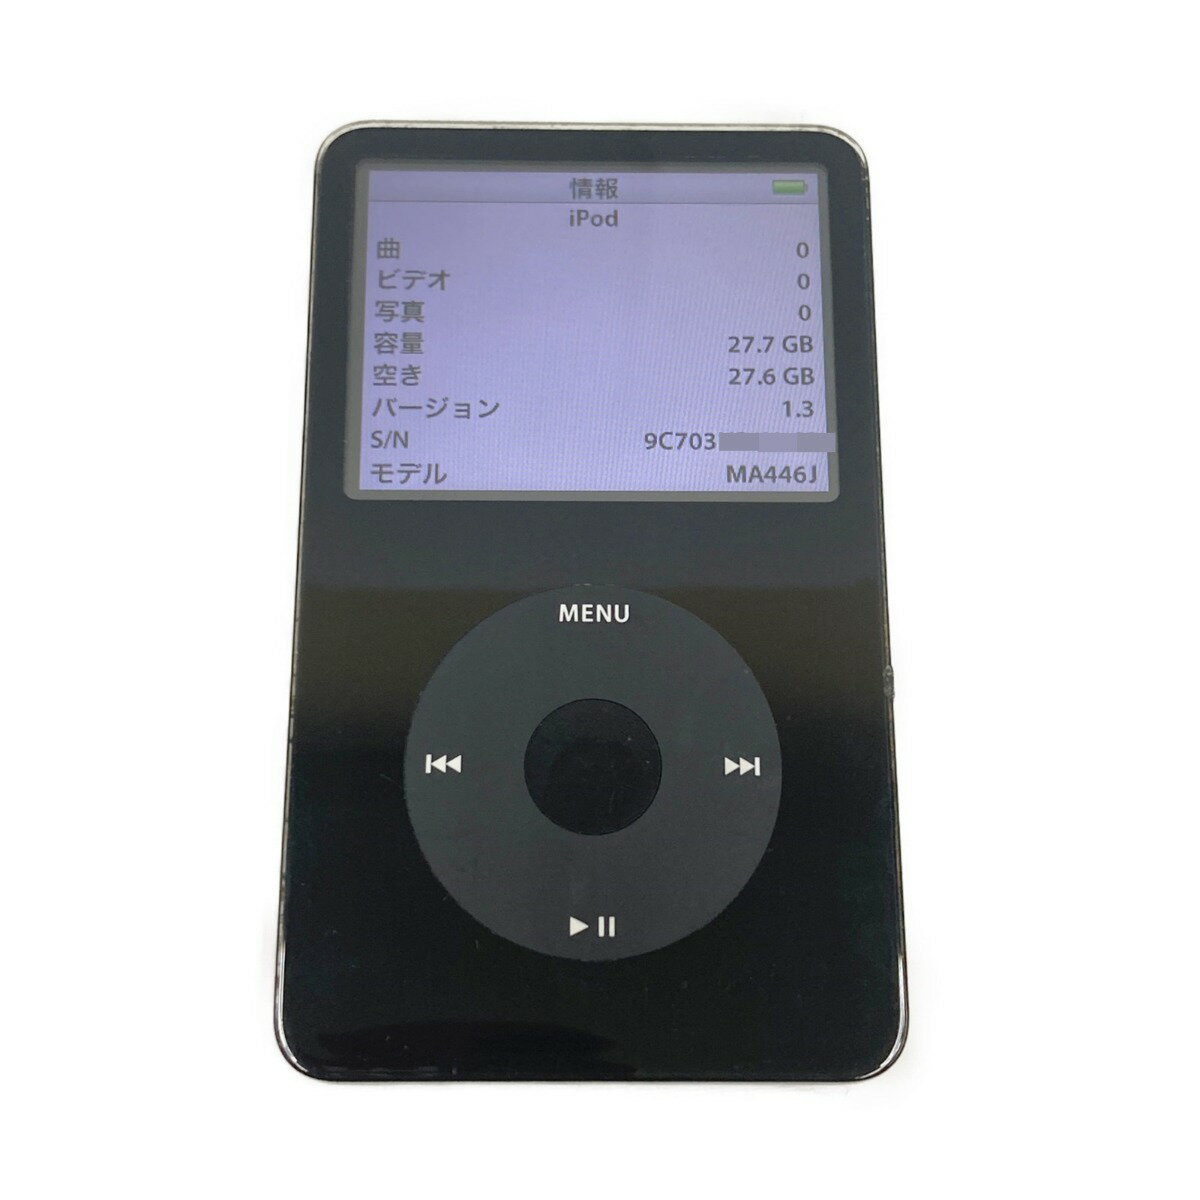 〇〇【中古】Apple アップル 第5世代 iPod デジタル オーディオプレーヤー ジャンク品 現状渡し Dランク